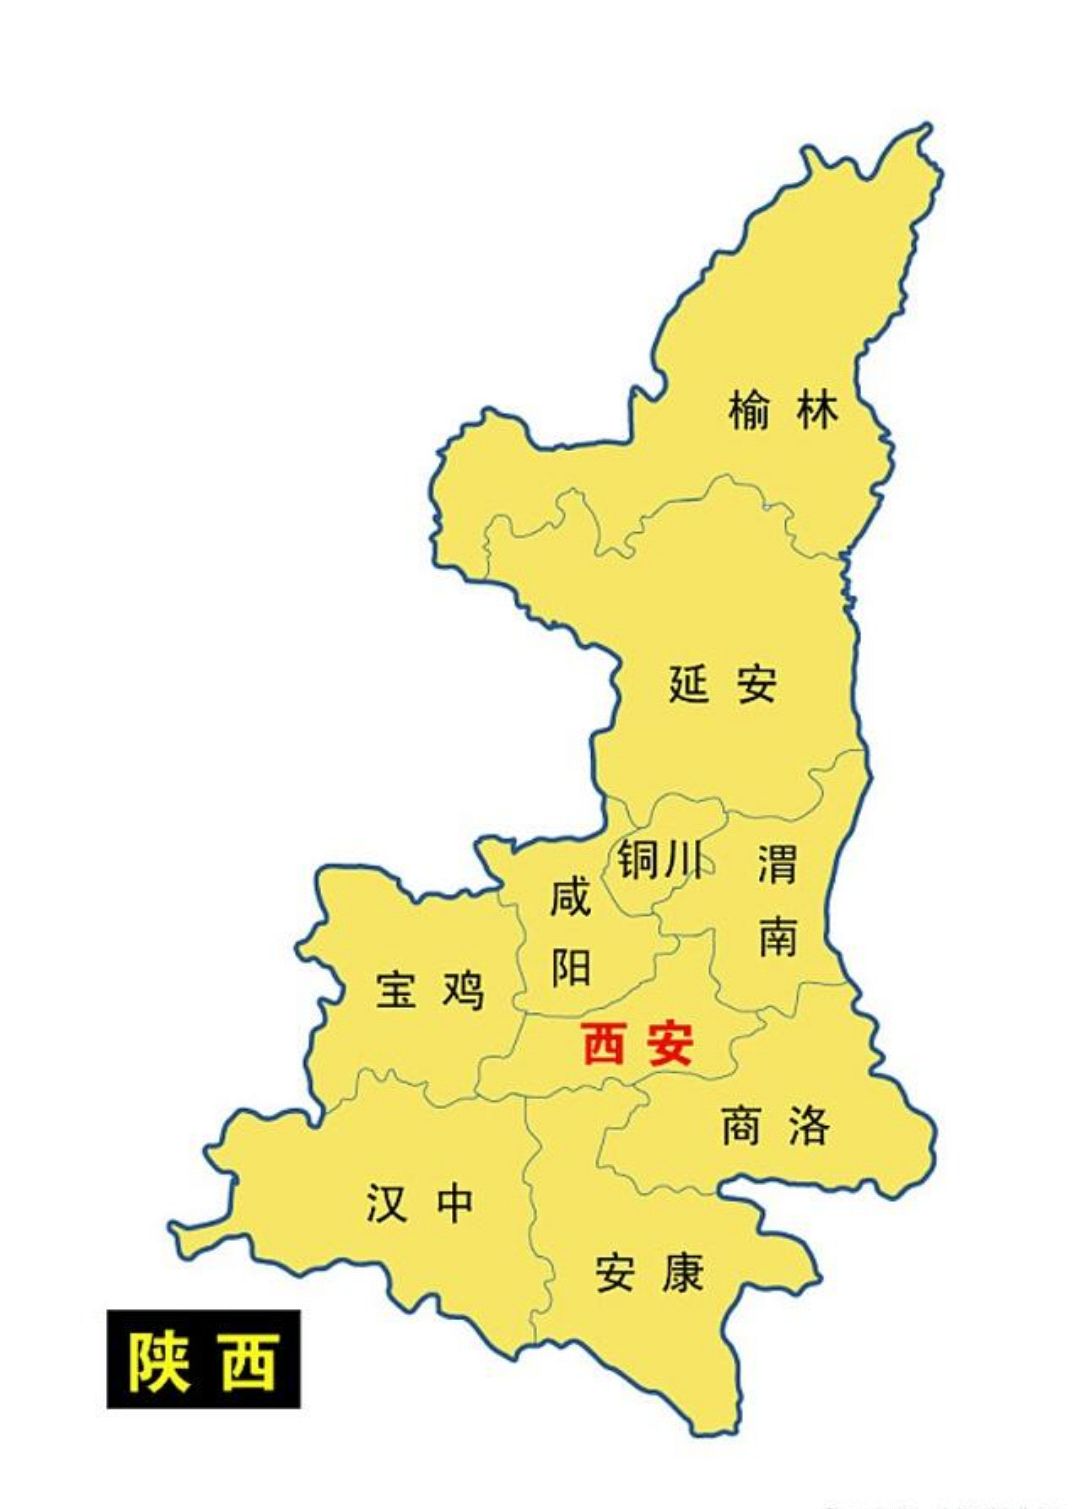 西安在陕西省地理位置 中国南北方的分界线之一的秦岭 西安的地质构造